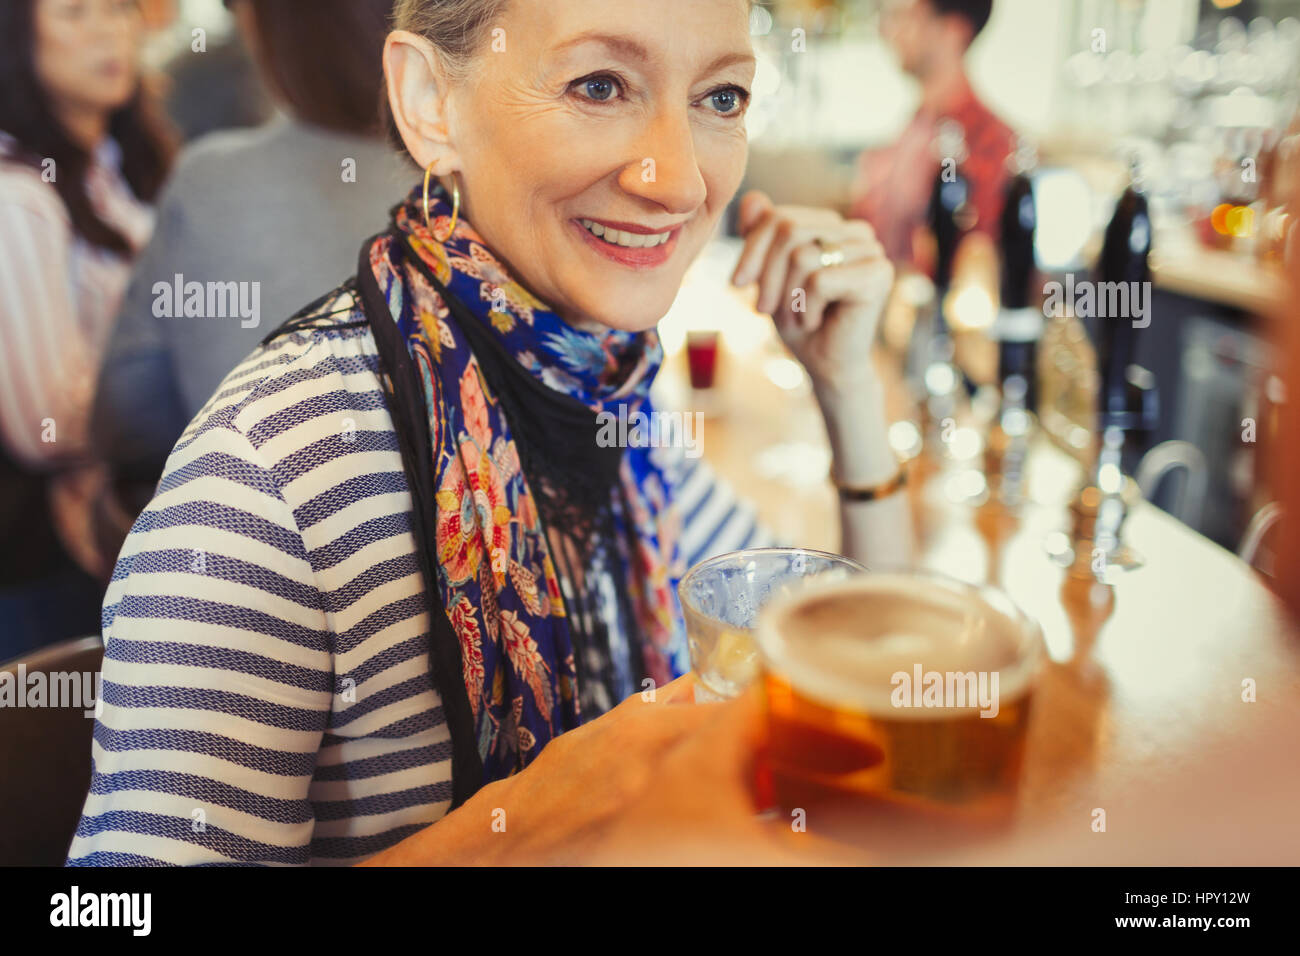 Senior woman drinking beer at bar Stock Photo